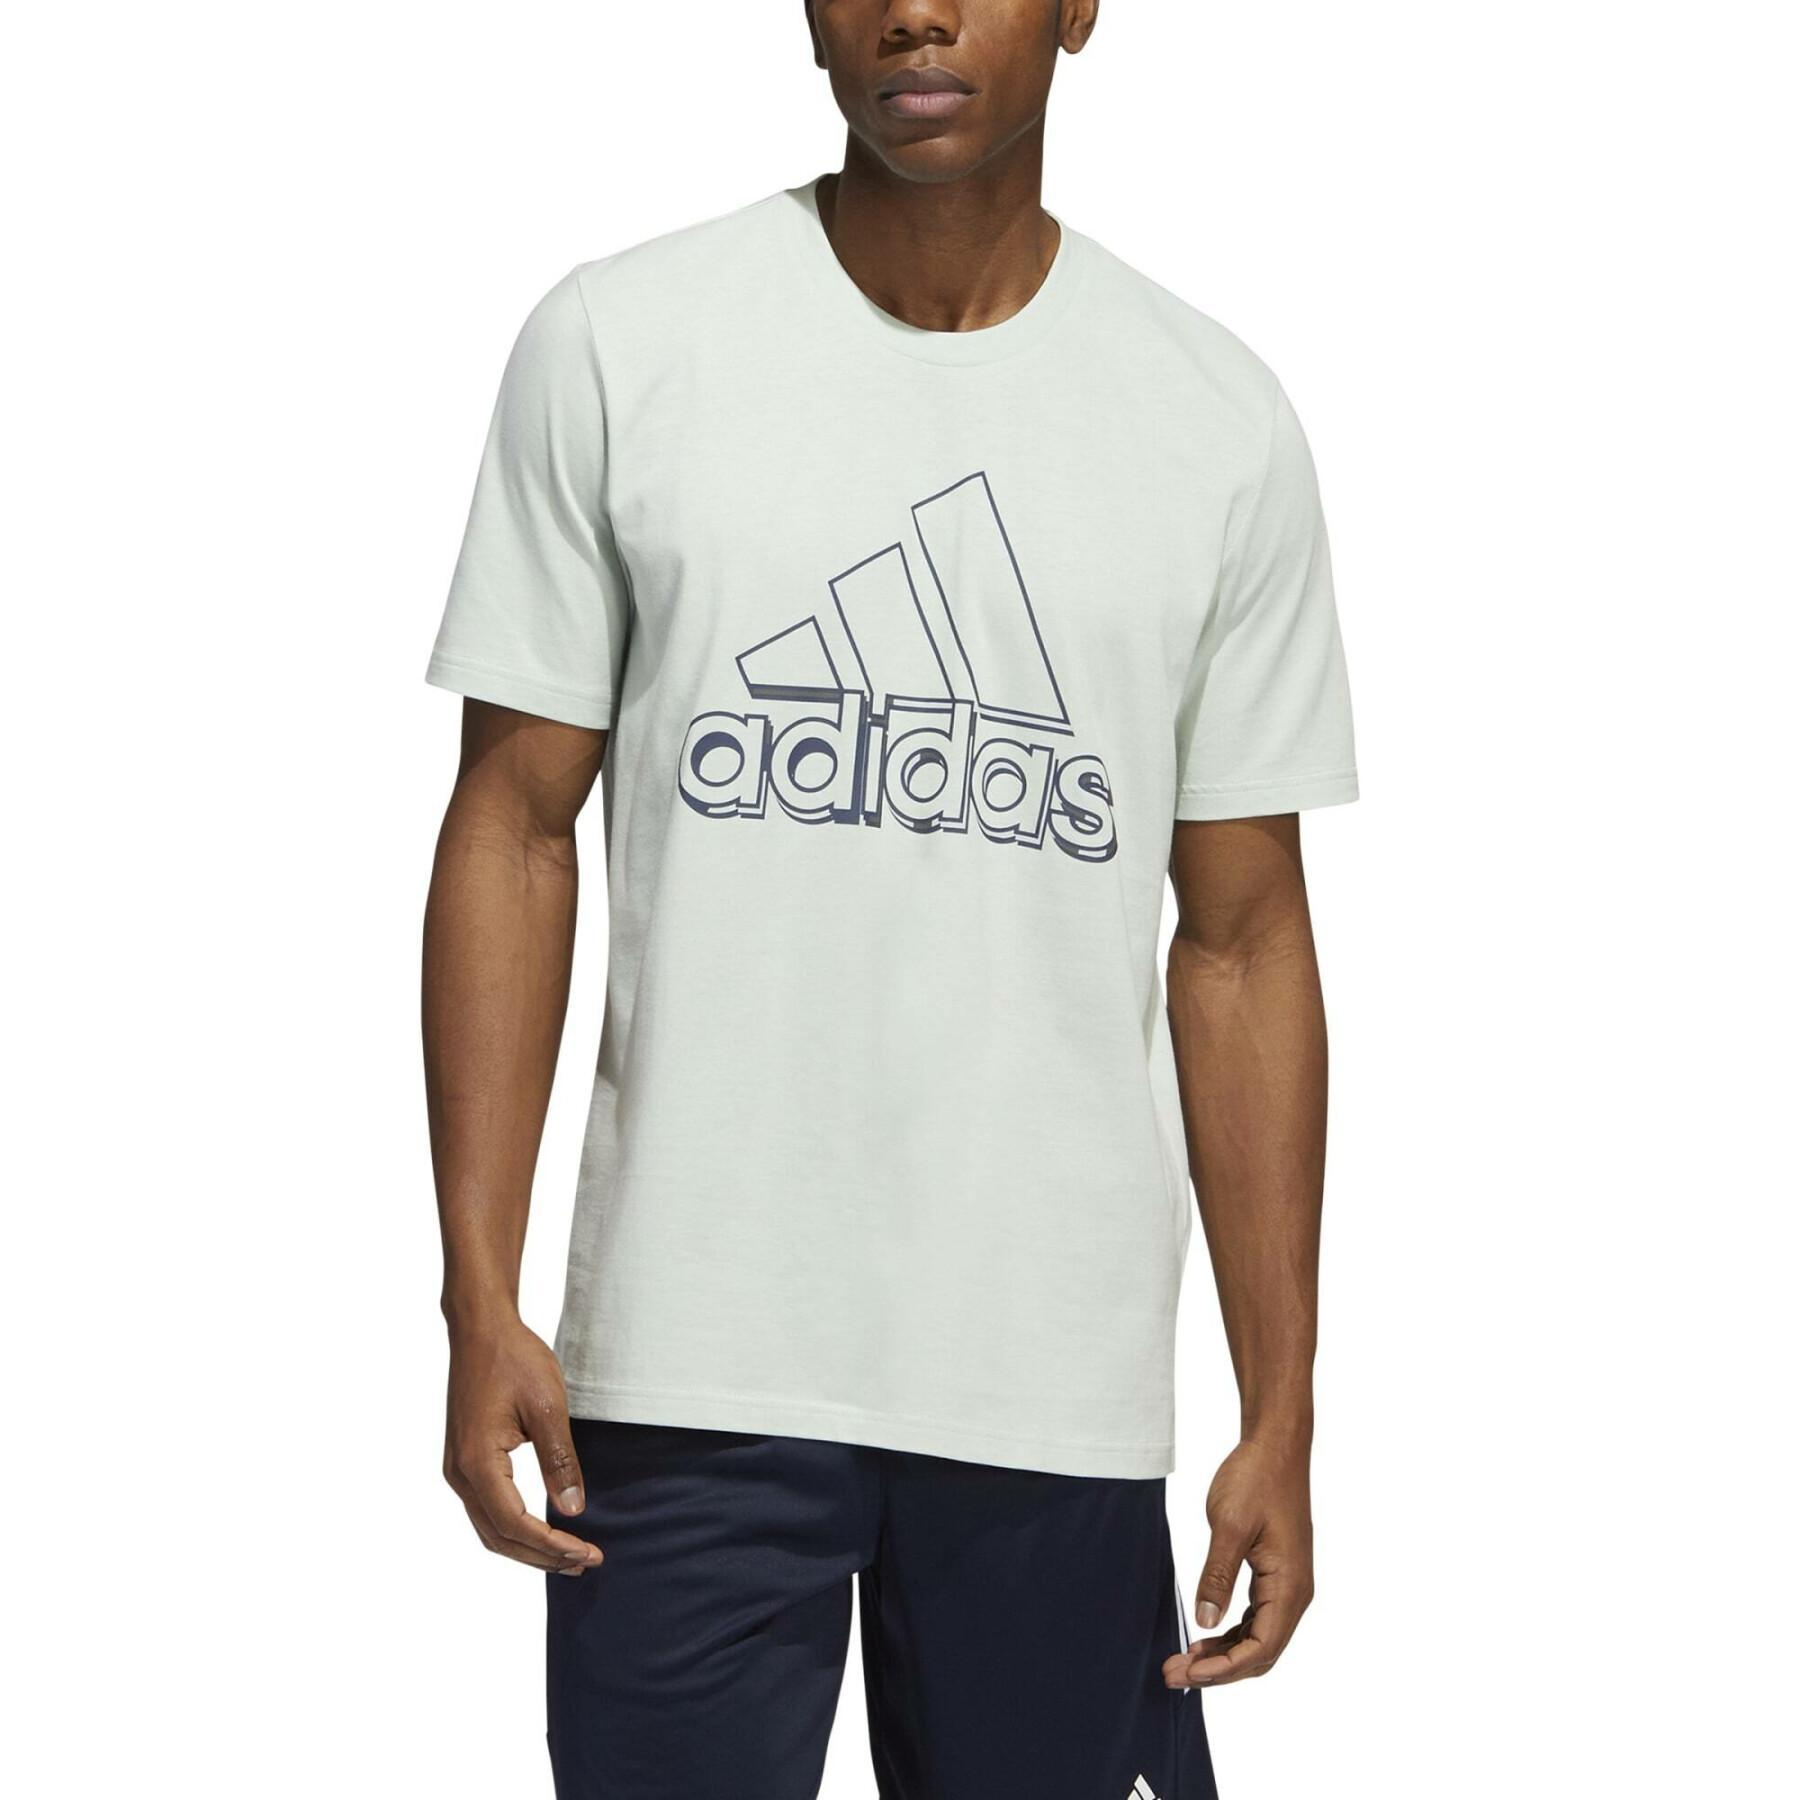 Koszulka graficzna adidas Dynamic